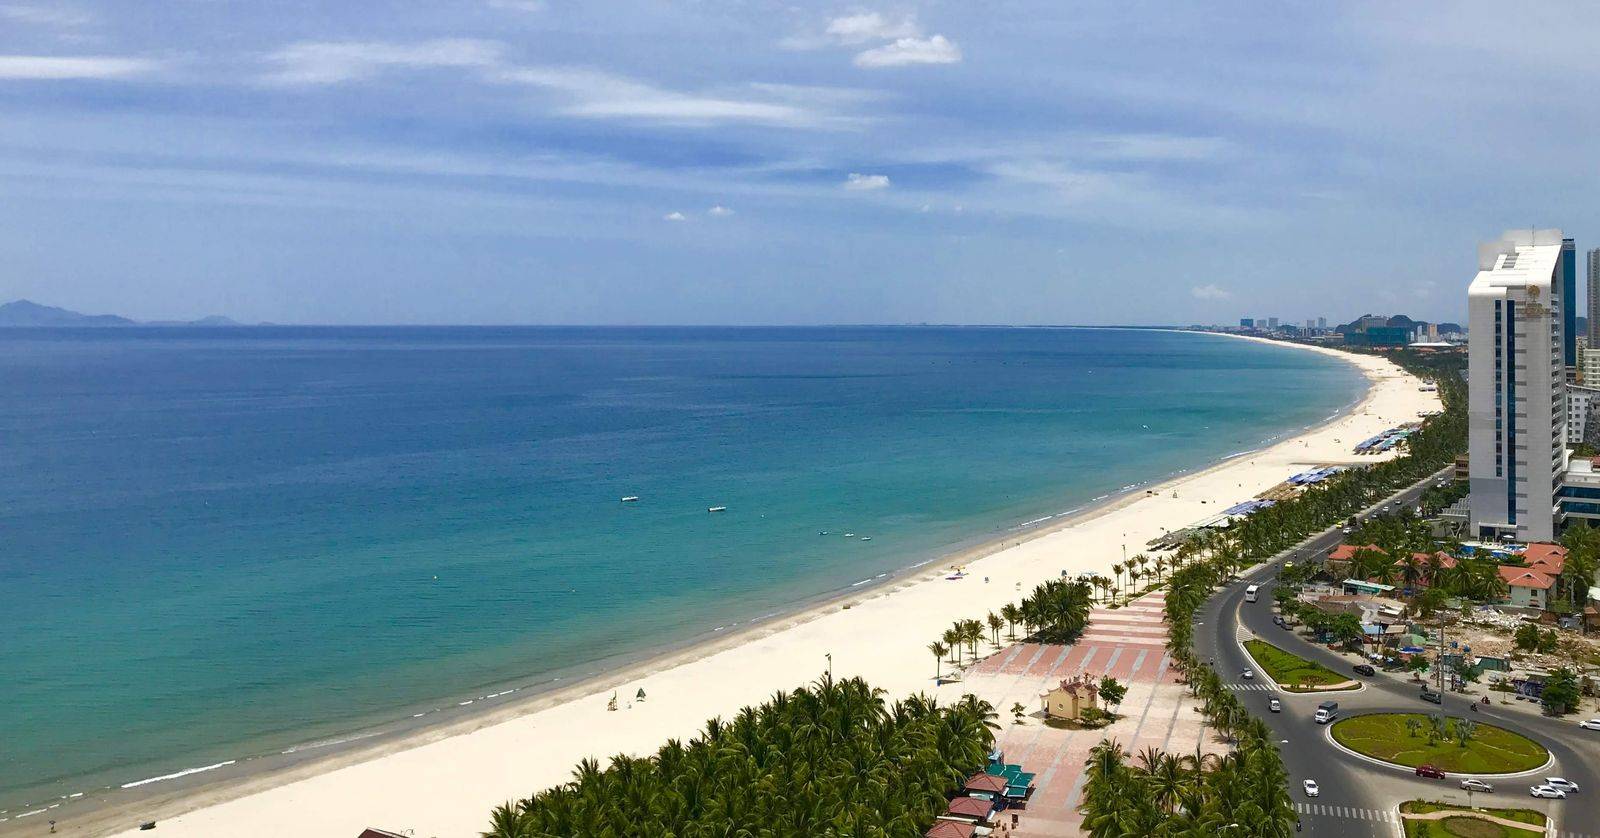 Пляжи вьетнама. список 10 лучших пляжей с видео обзором